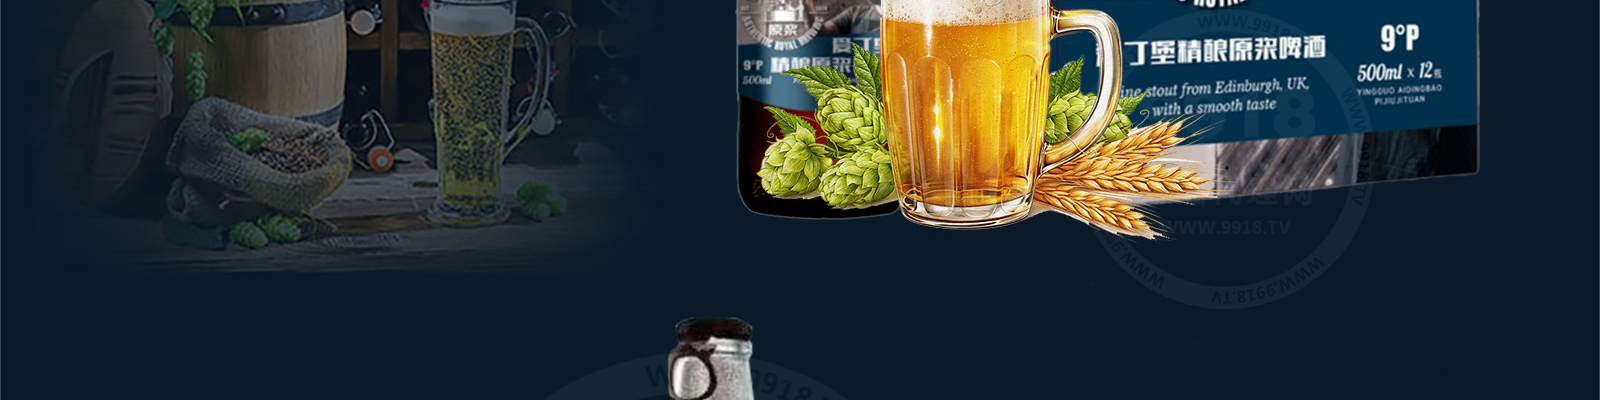 英国爱丁堡啤酒集团国际有限公司-好酒代理网_18